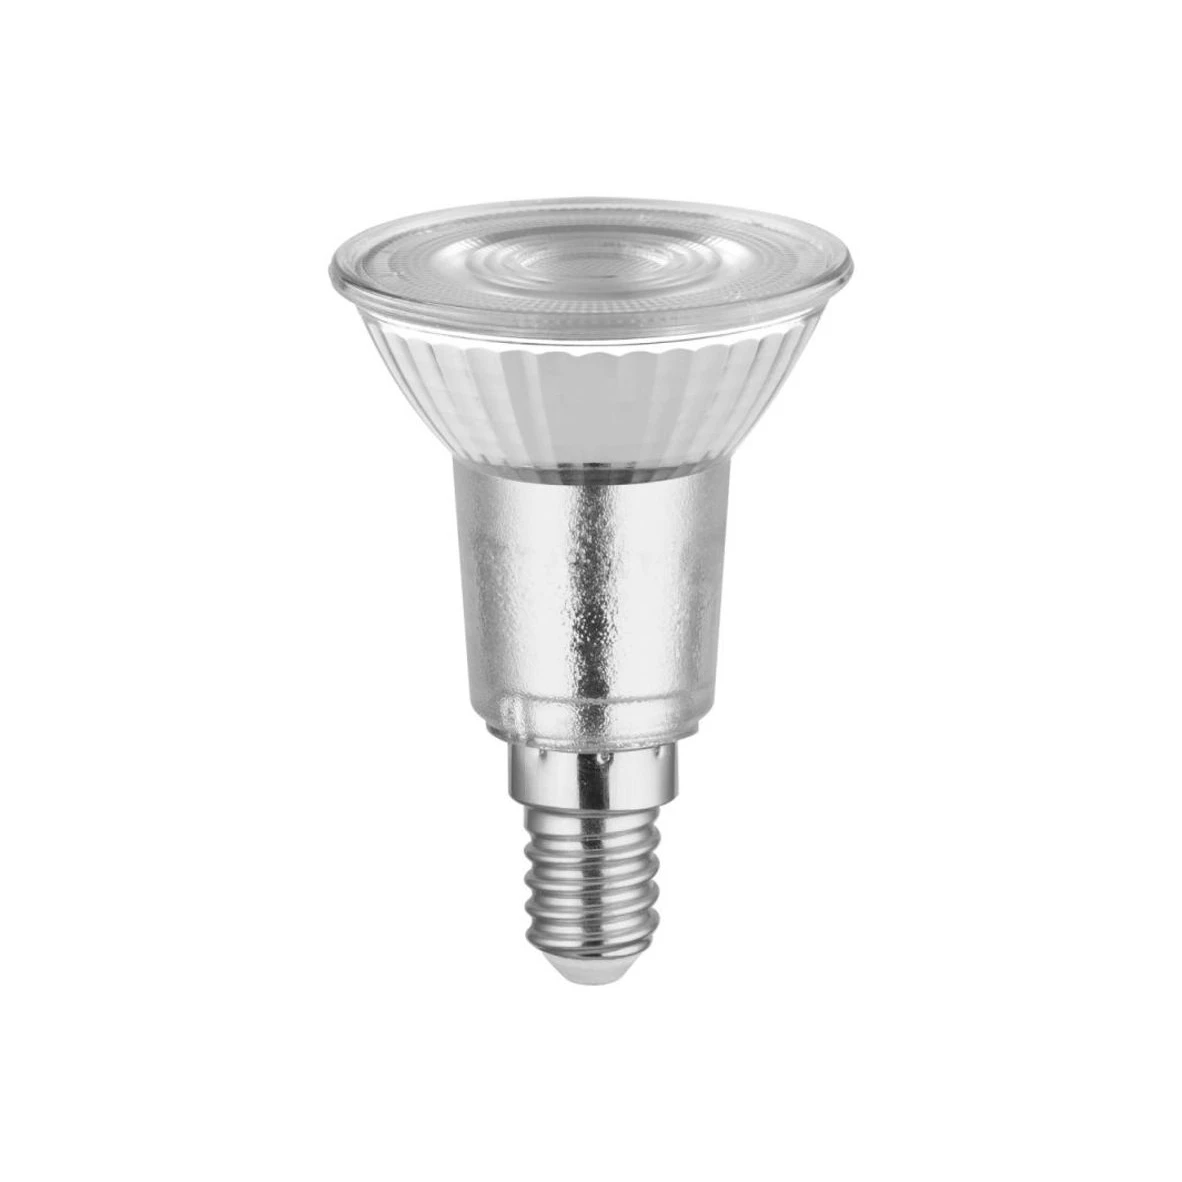 Ampoule LED - 14,5W - E27 - spot PAR38 - Parathom OSRAM